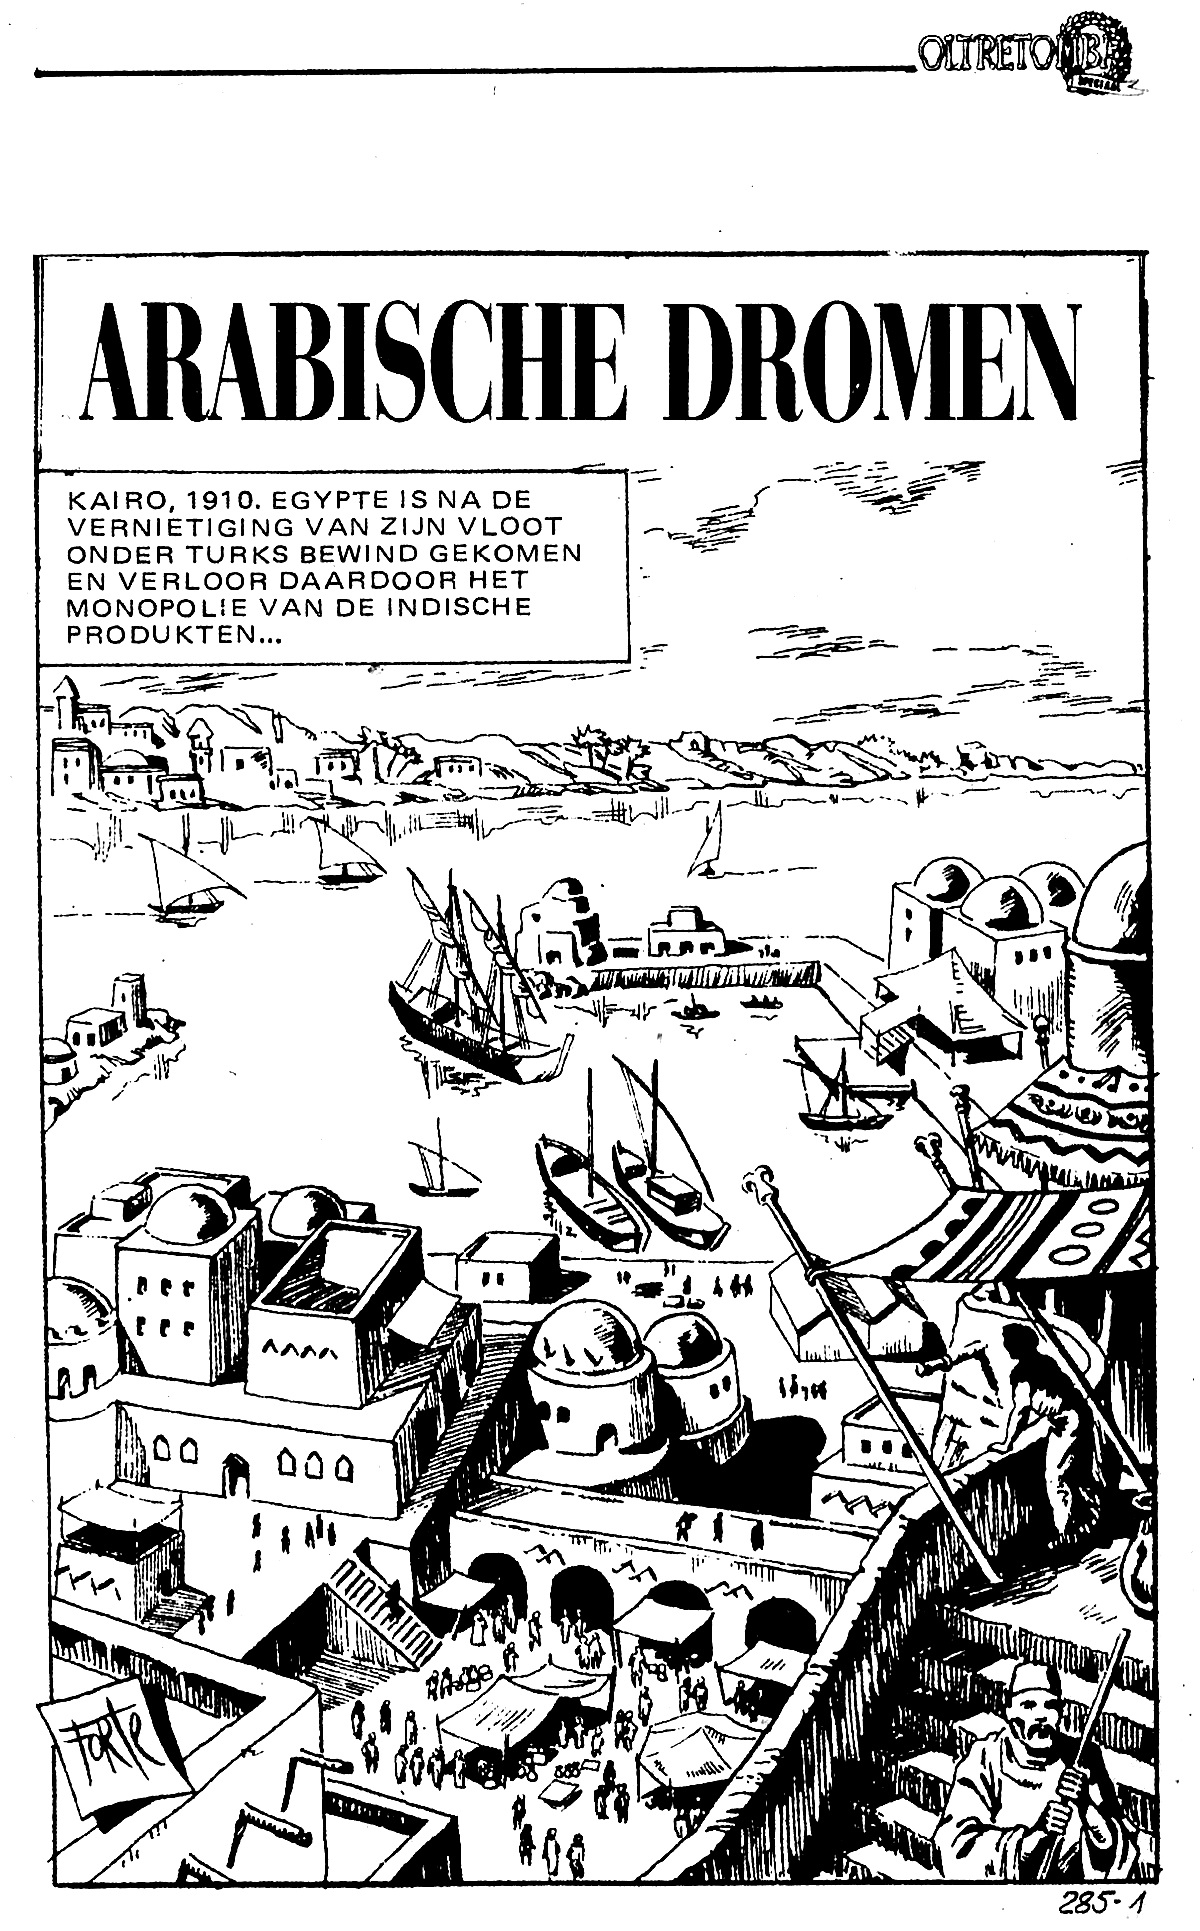 Oltretomba 160 - Arabische dromen (Dutch) 2